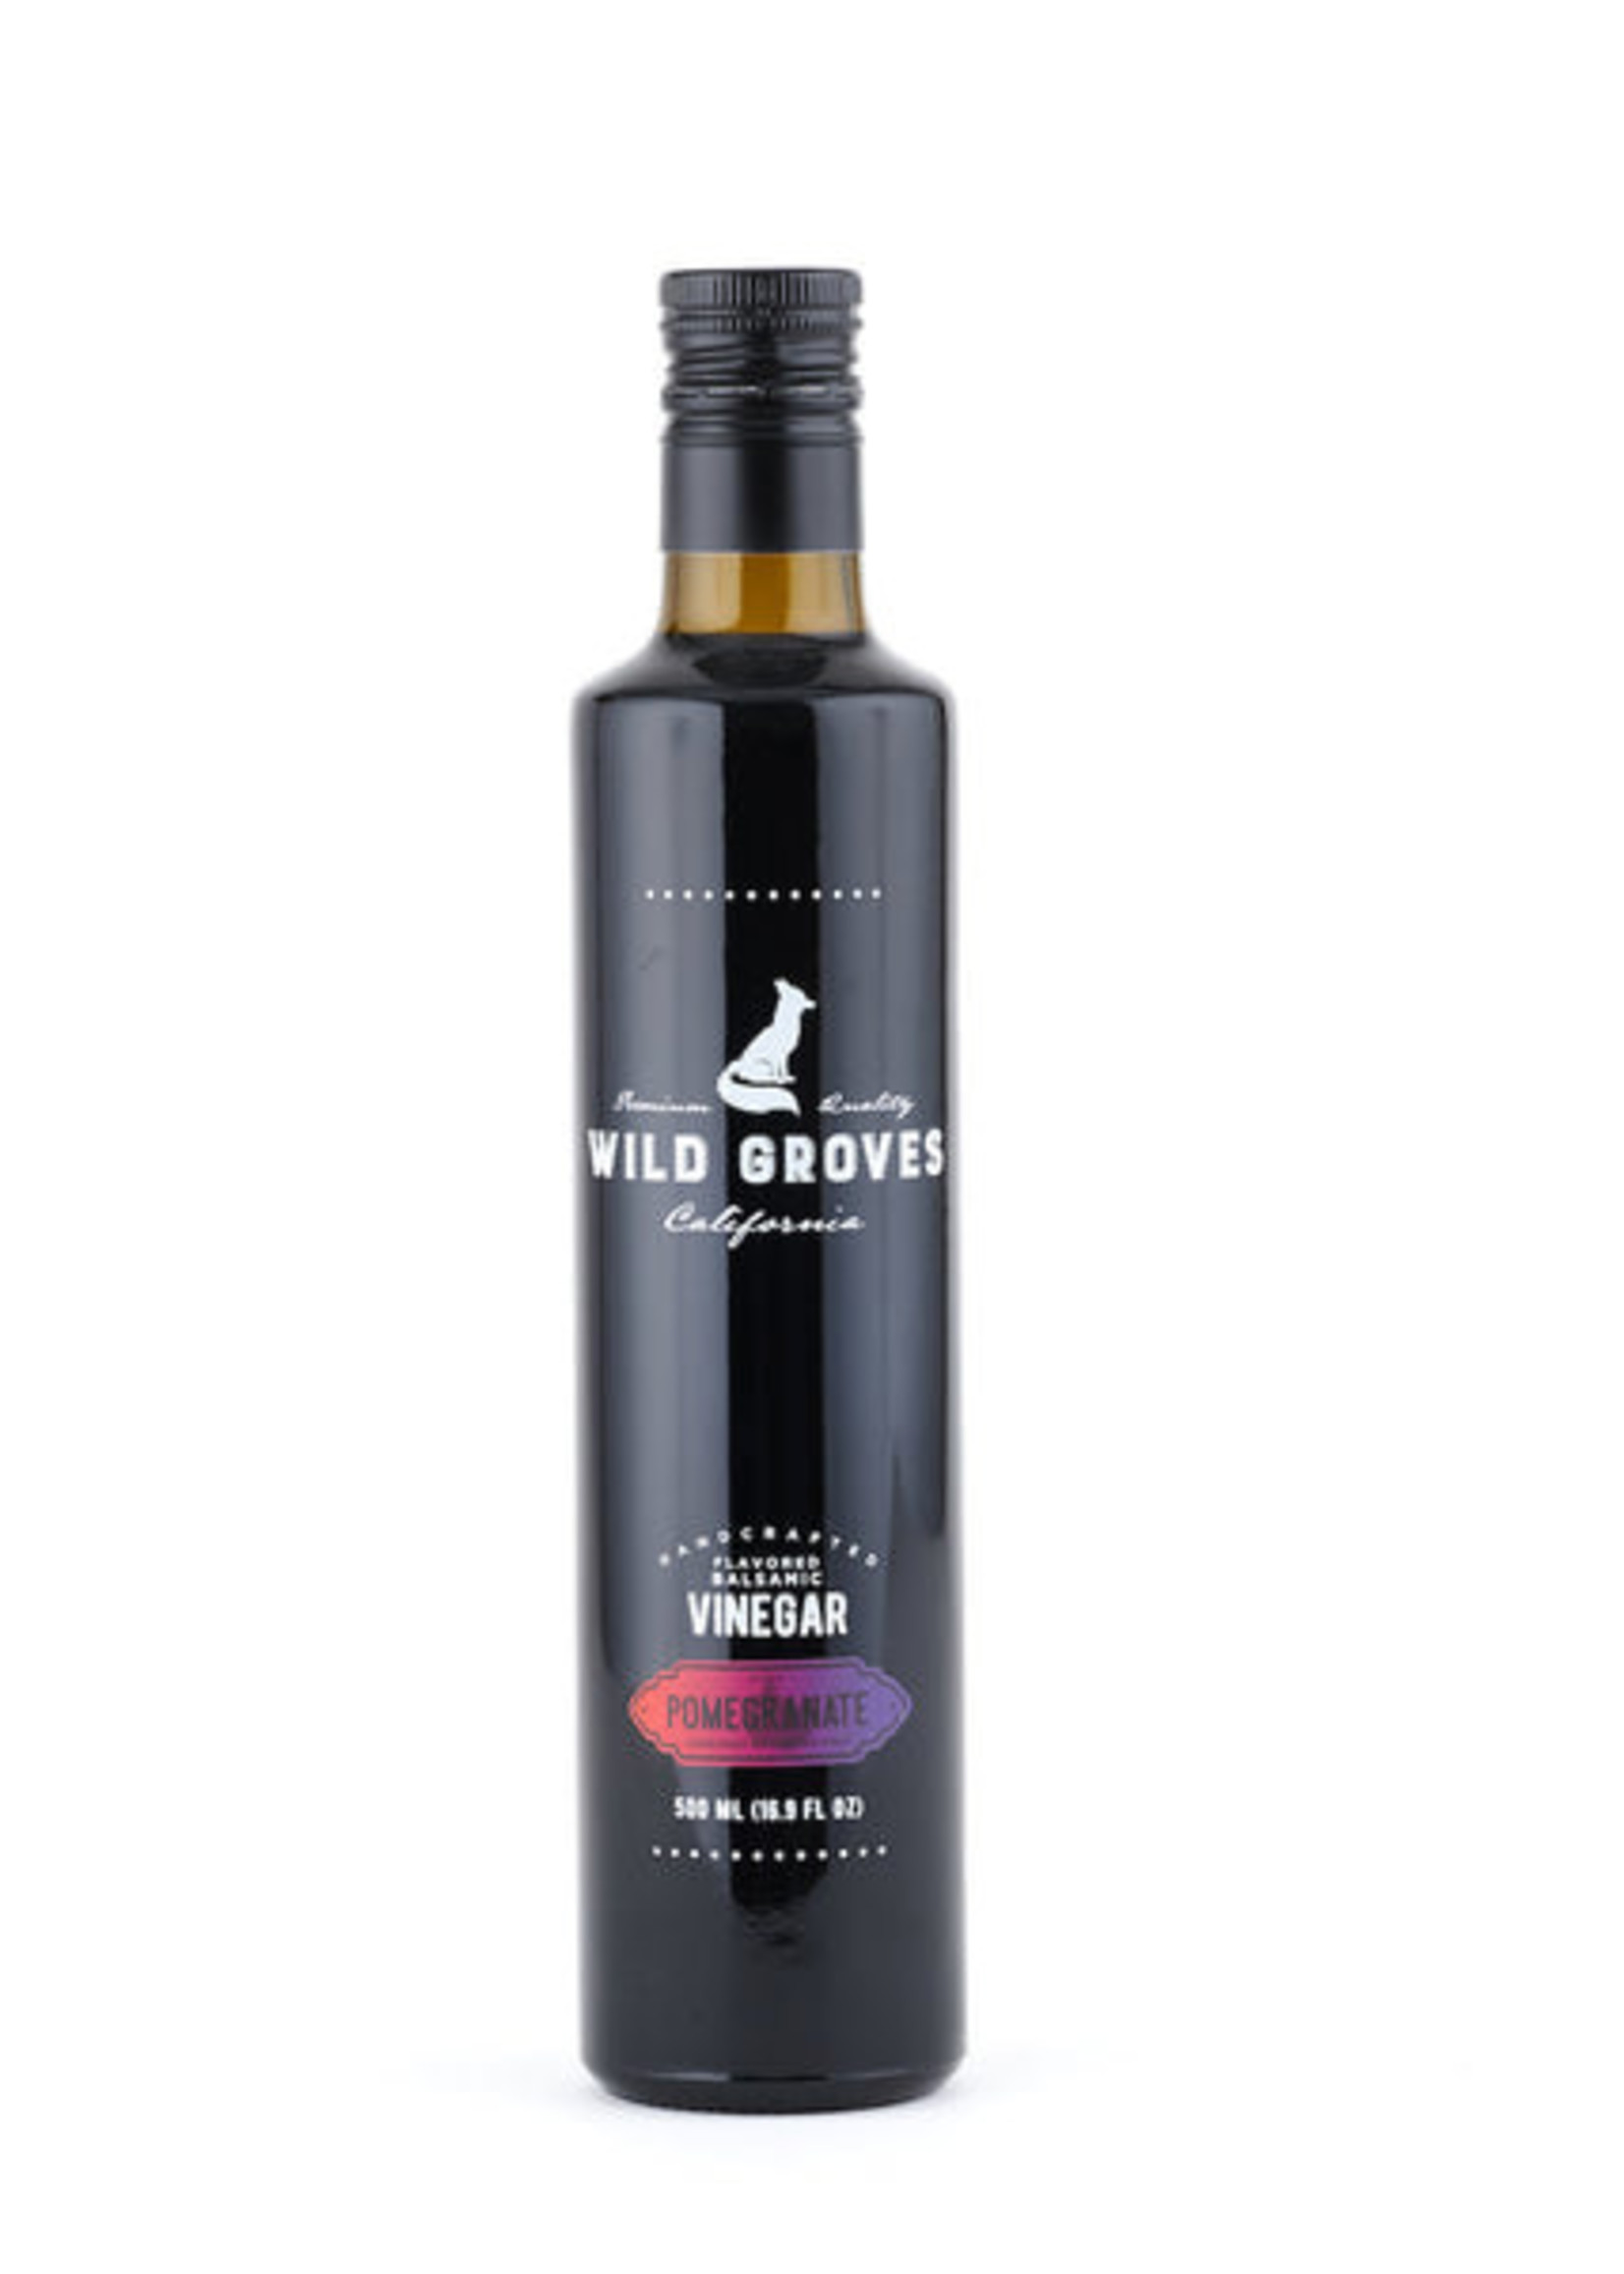 Wild Groves Wild Groves Pomegranate Dark Balsamic Vinegar 500 ml